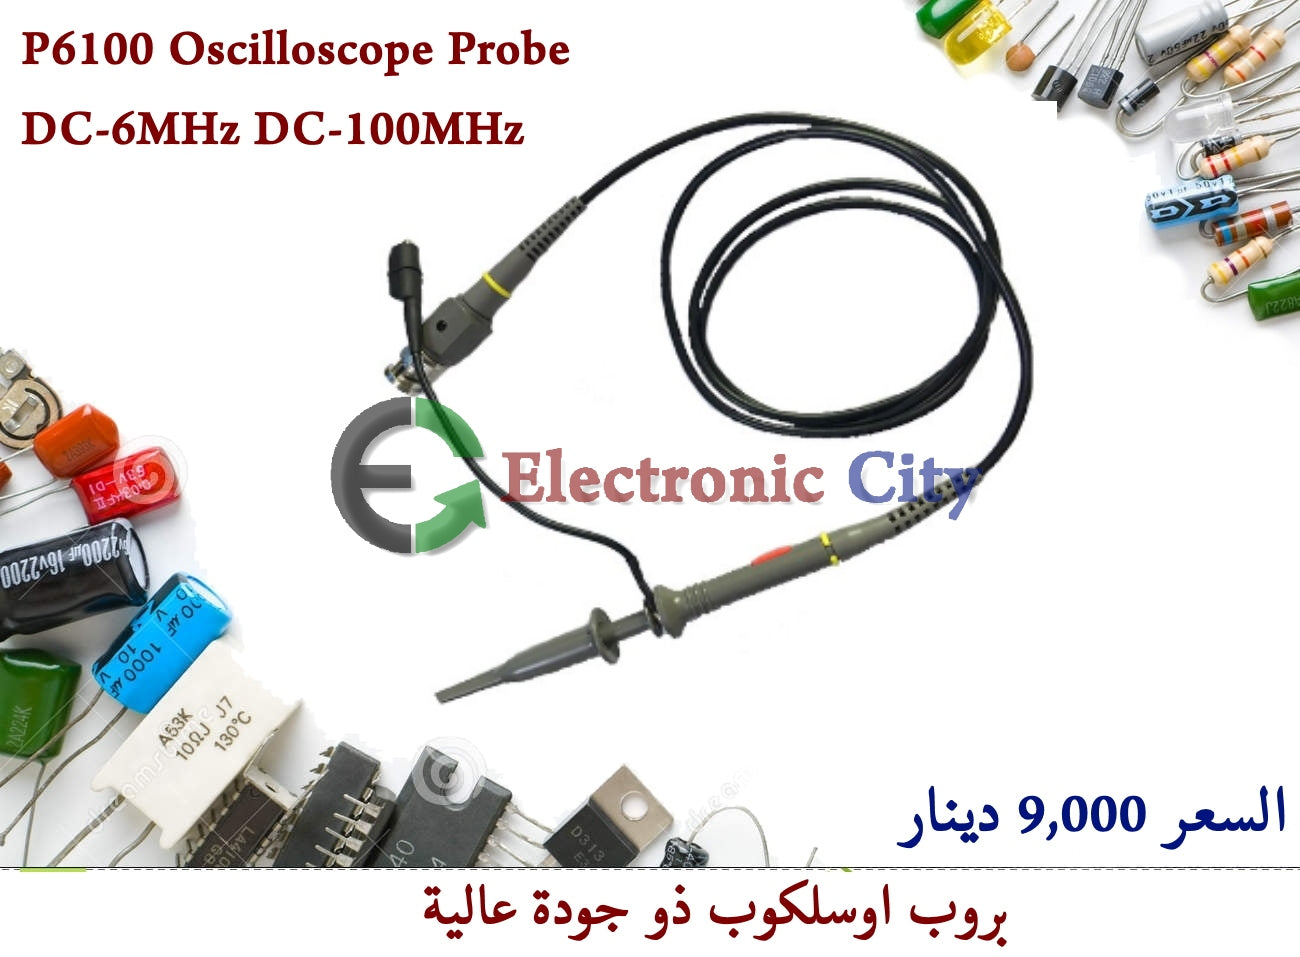 P6100 Oscilloscope Probe DC-6MHz DC-100MHz